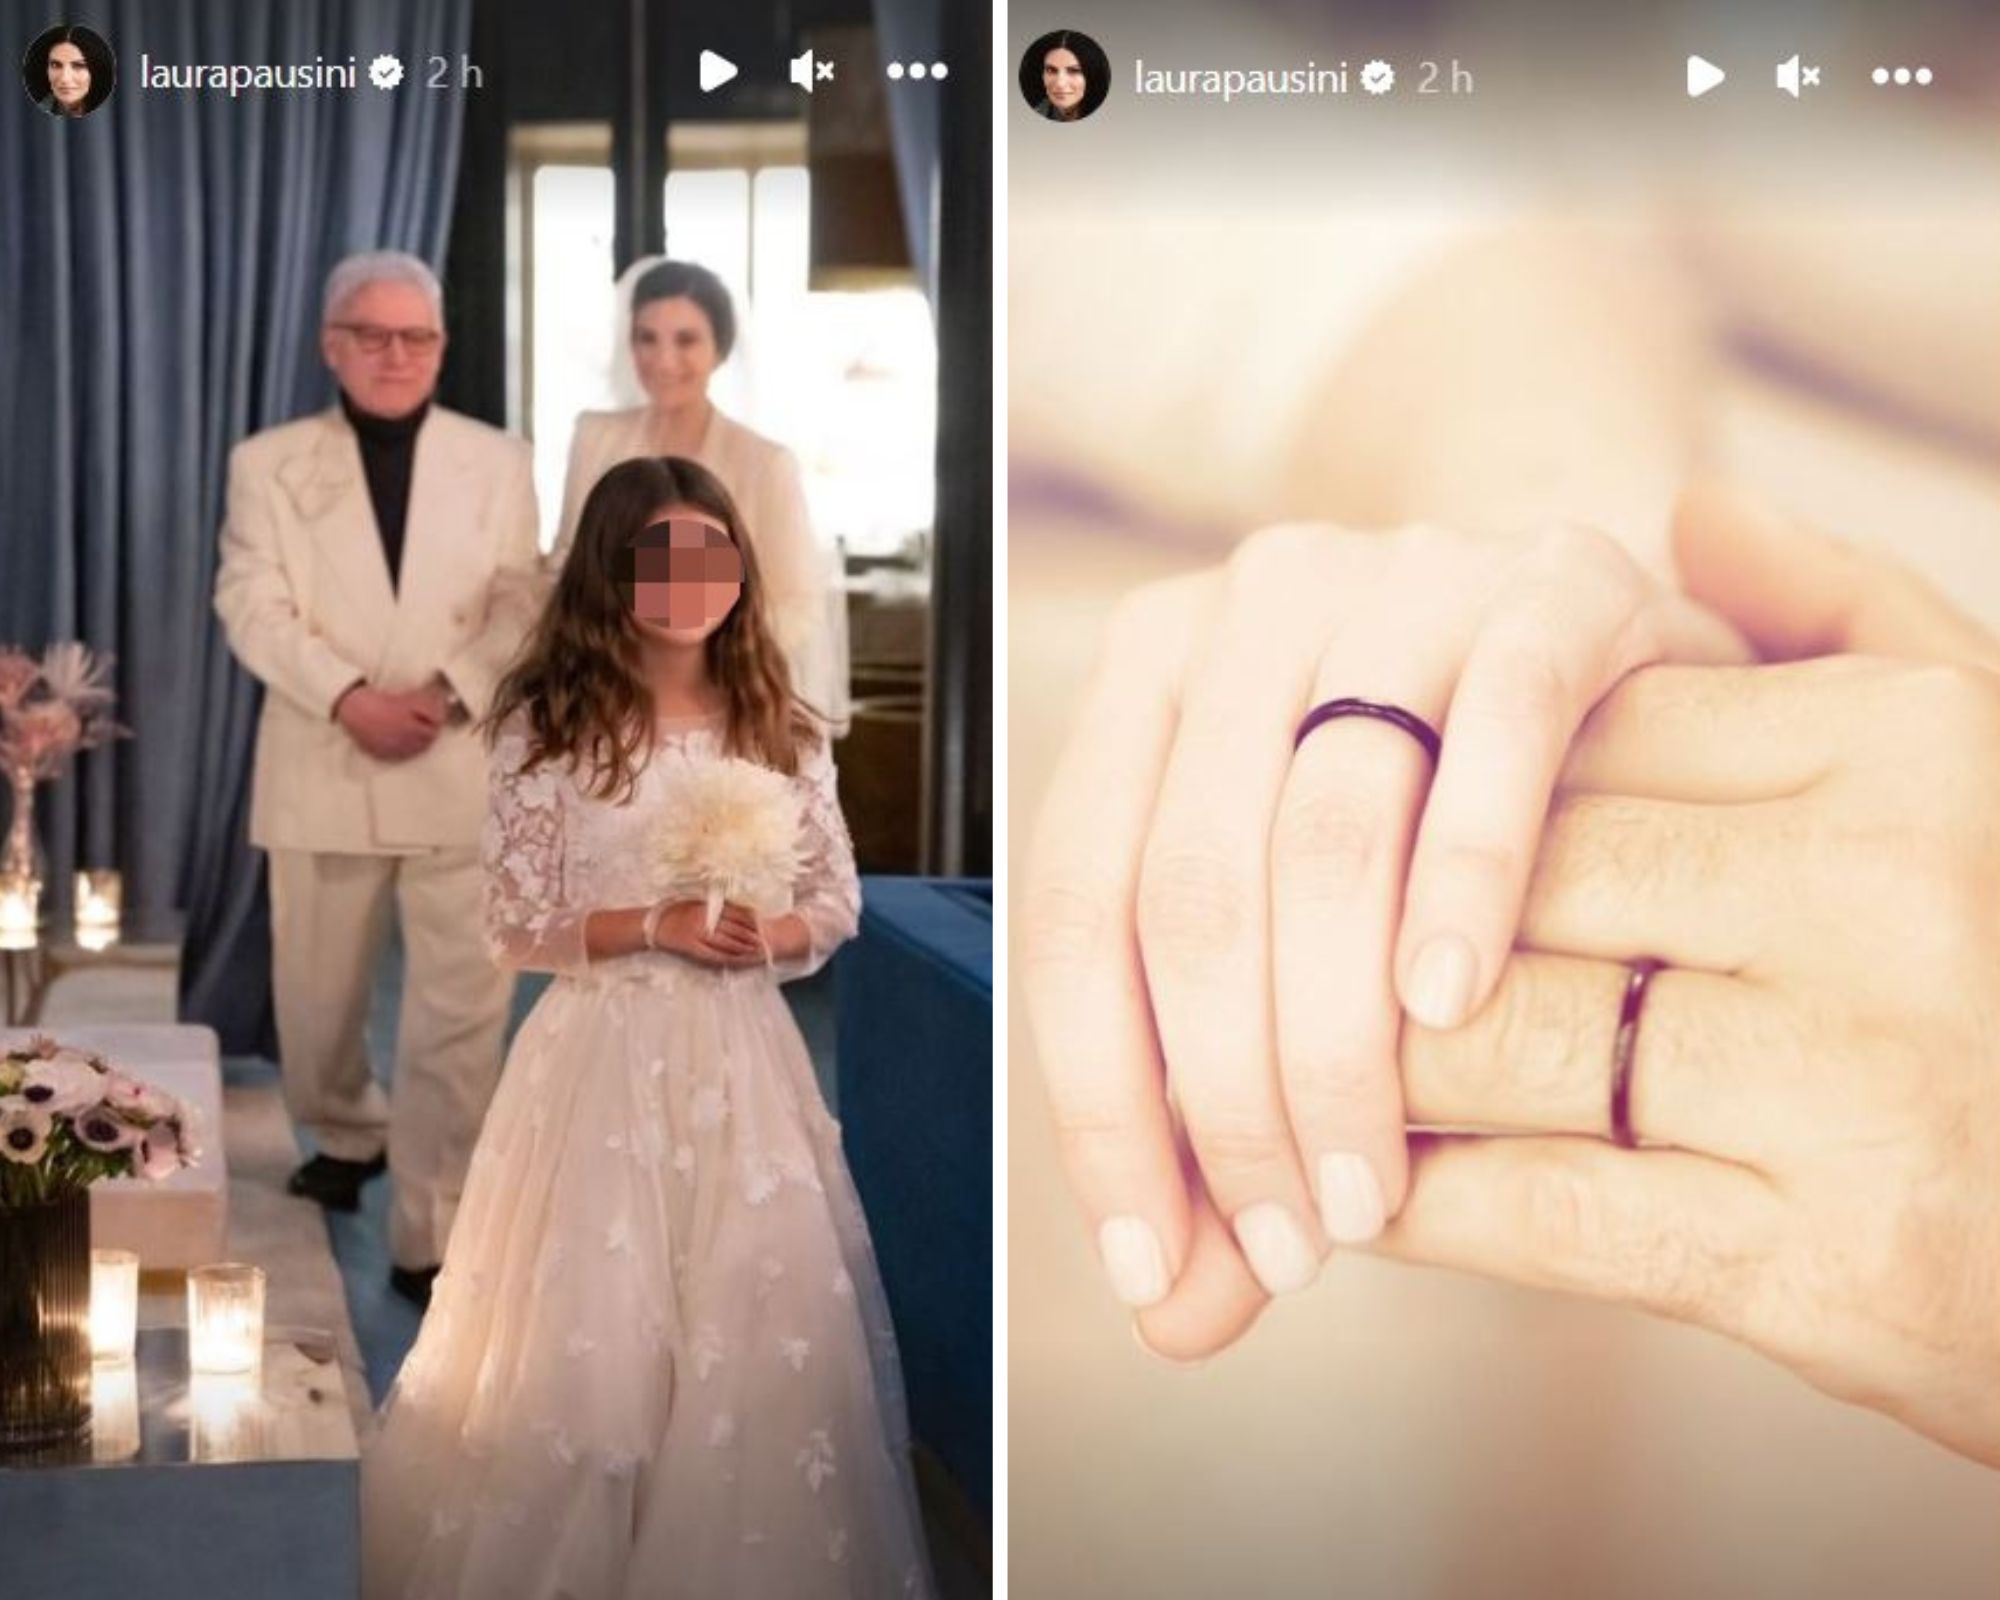 Los detalles de la boda de Laura Pausini.